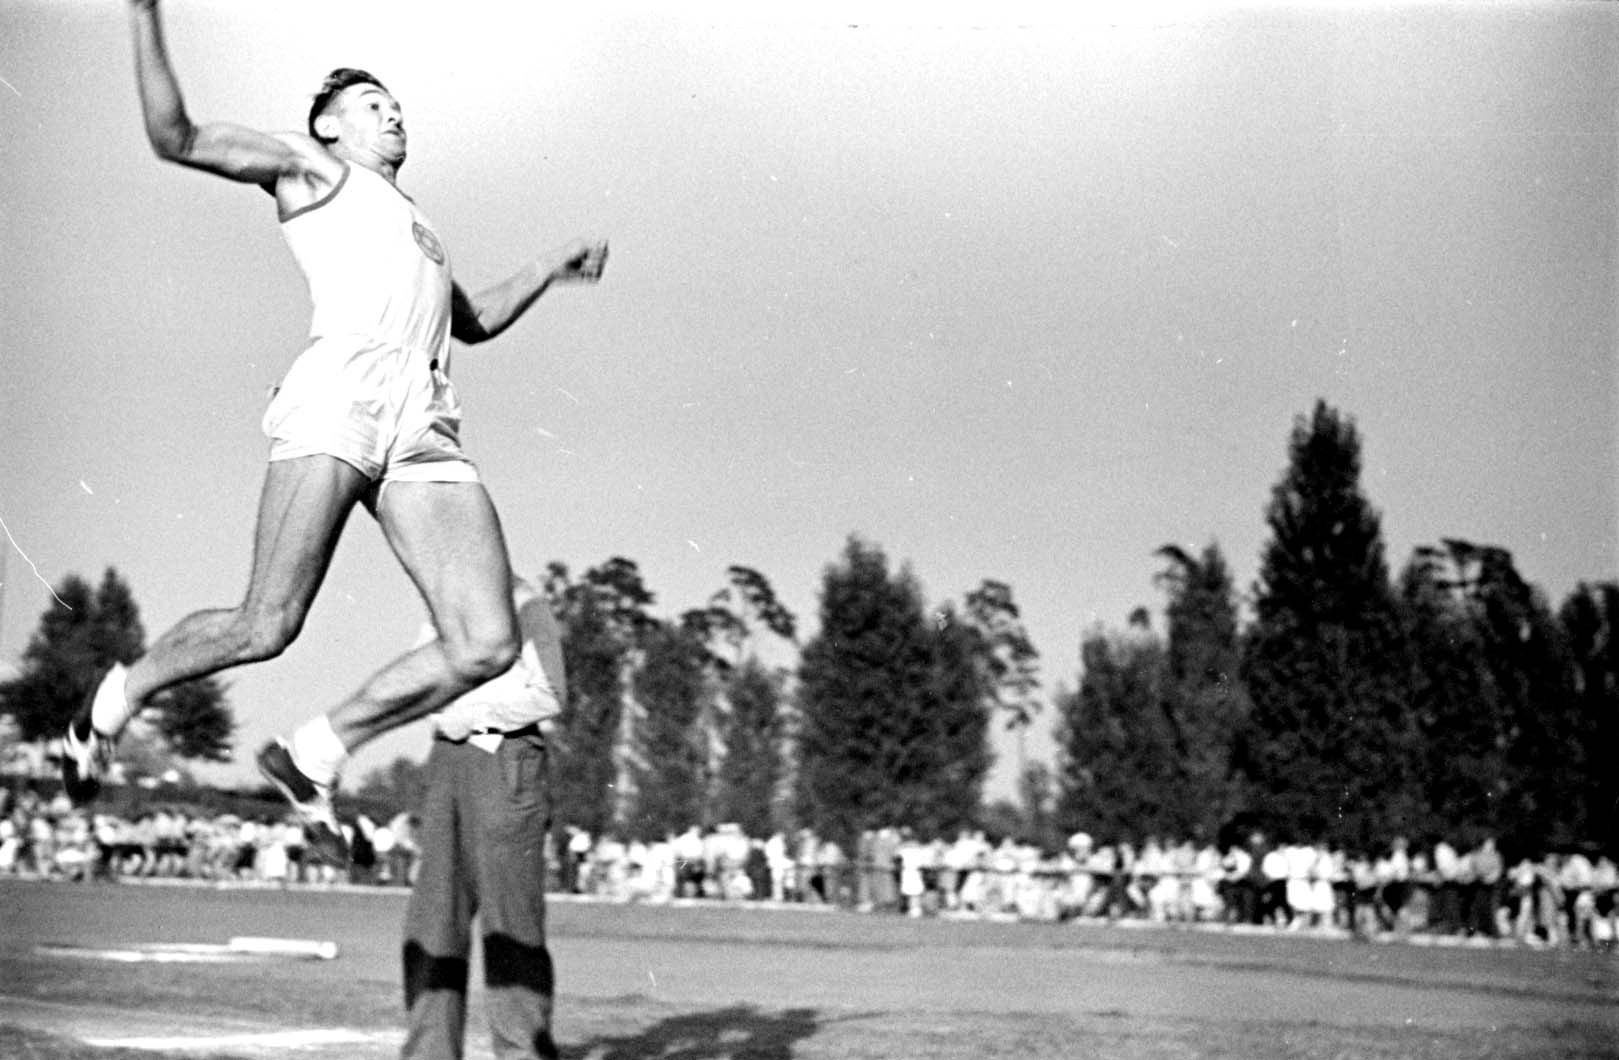 Deutschland, August 1937, Weitsprung bei einem Leichtathletik-Wettkampf des „Makkabi“